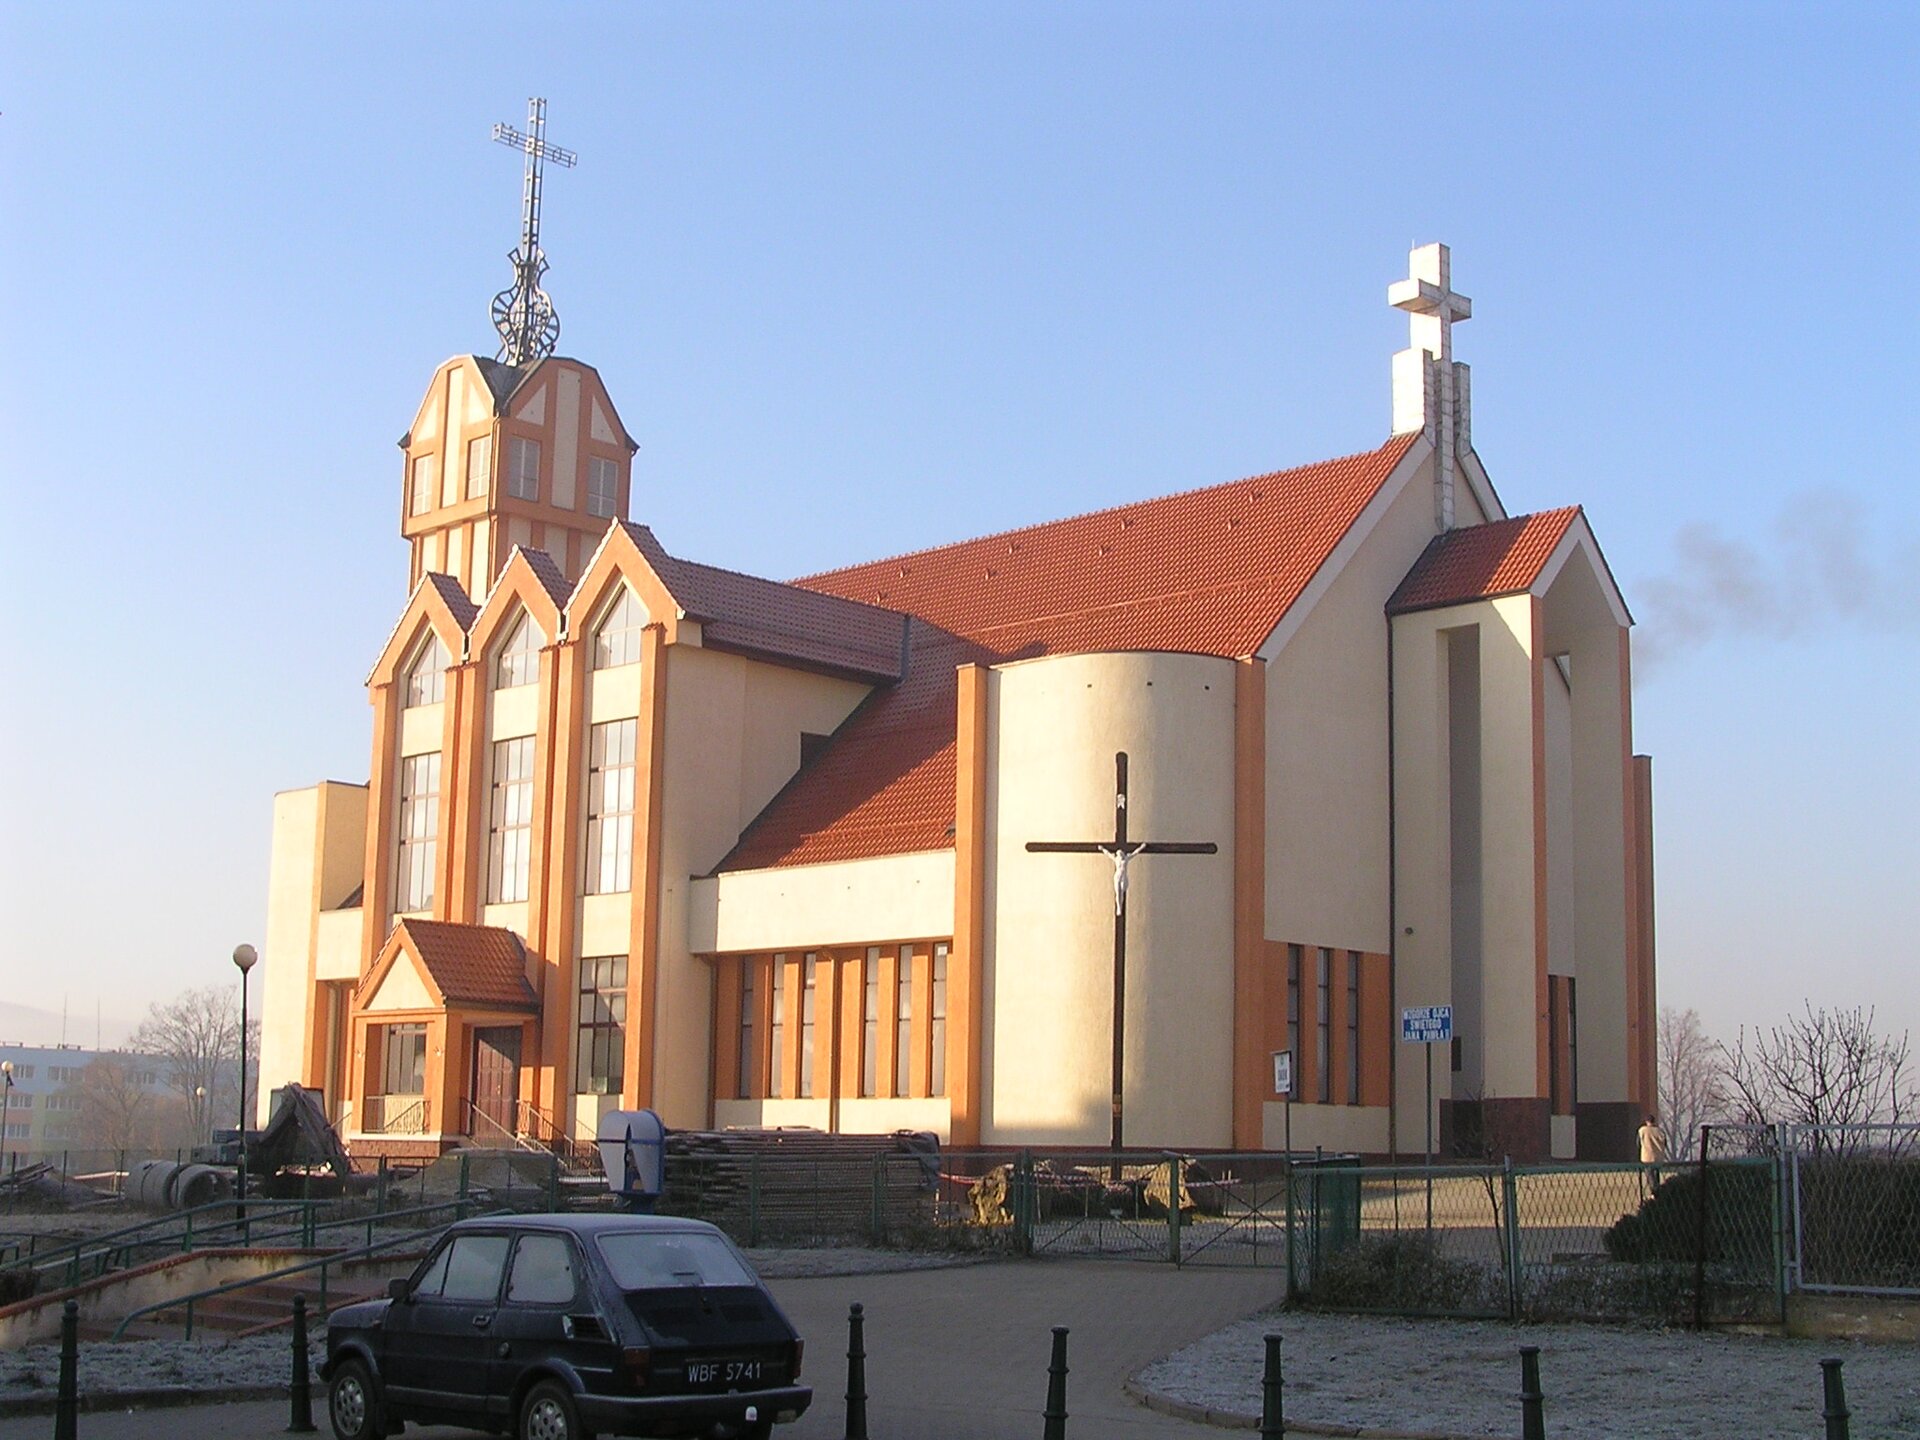 Kościół wzniesiony w XXI w. Źródło: WiWok~commonswiki, Kościół wzniesiony w XXI w., 2006, licencja: CC BY-SA 3.0.